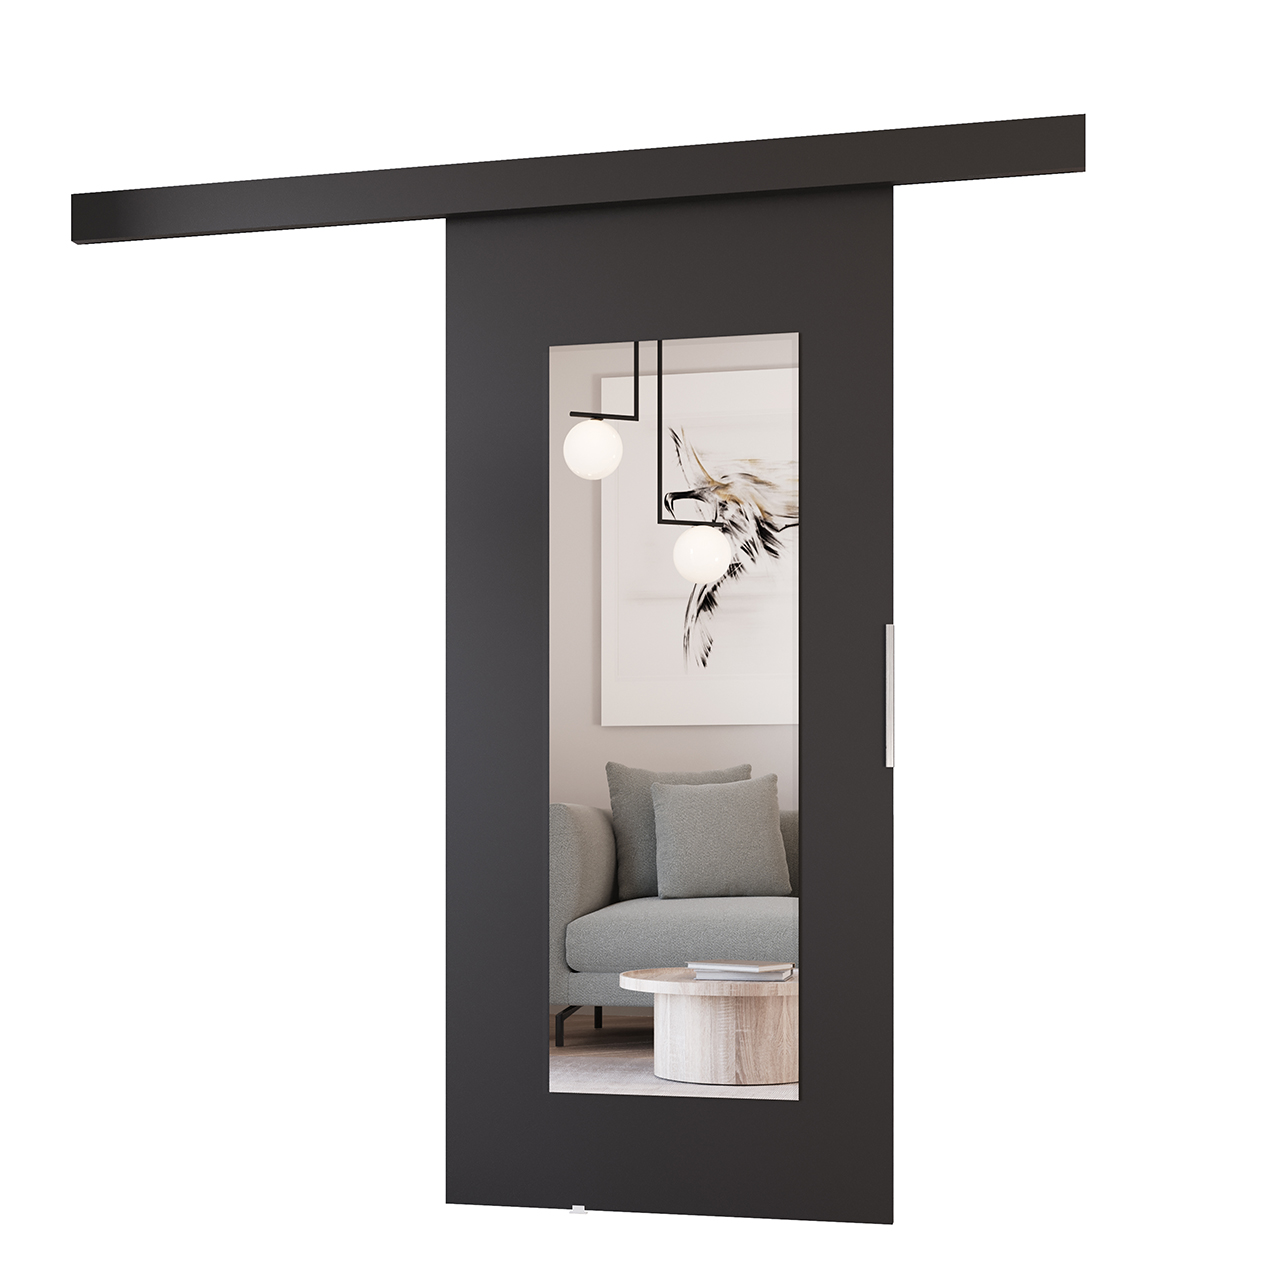 Sliding doors with mirror ILIS 100 black